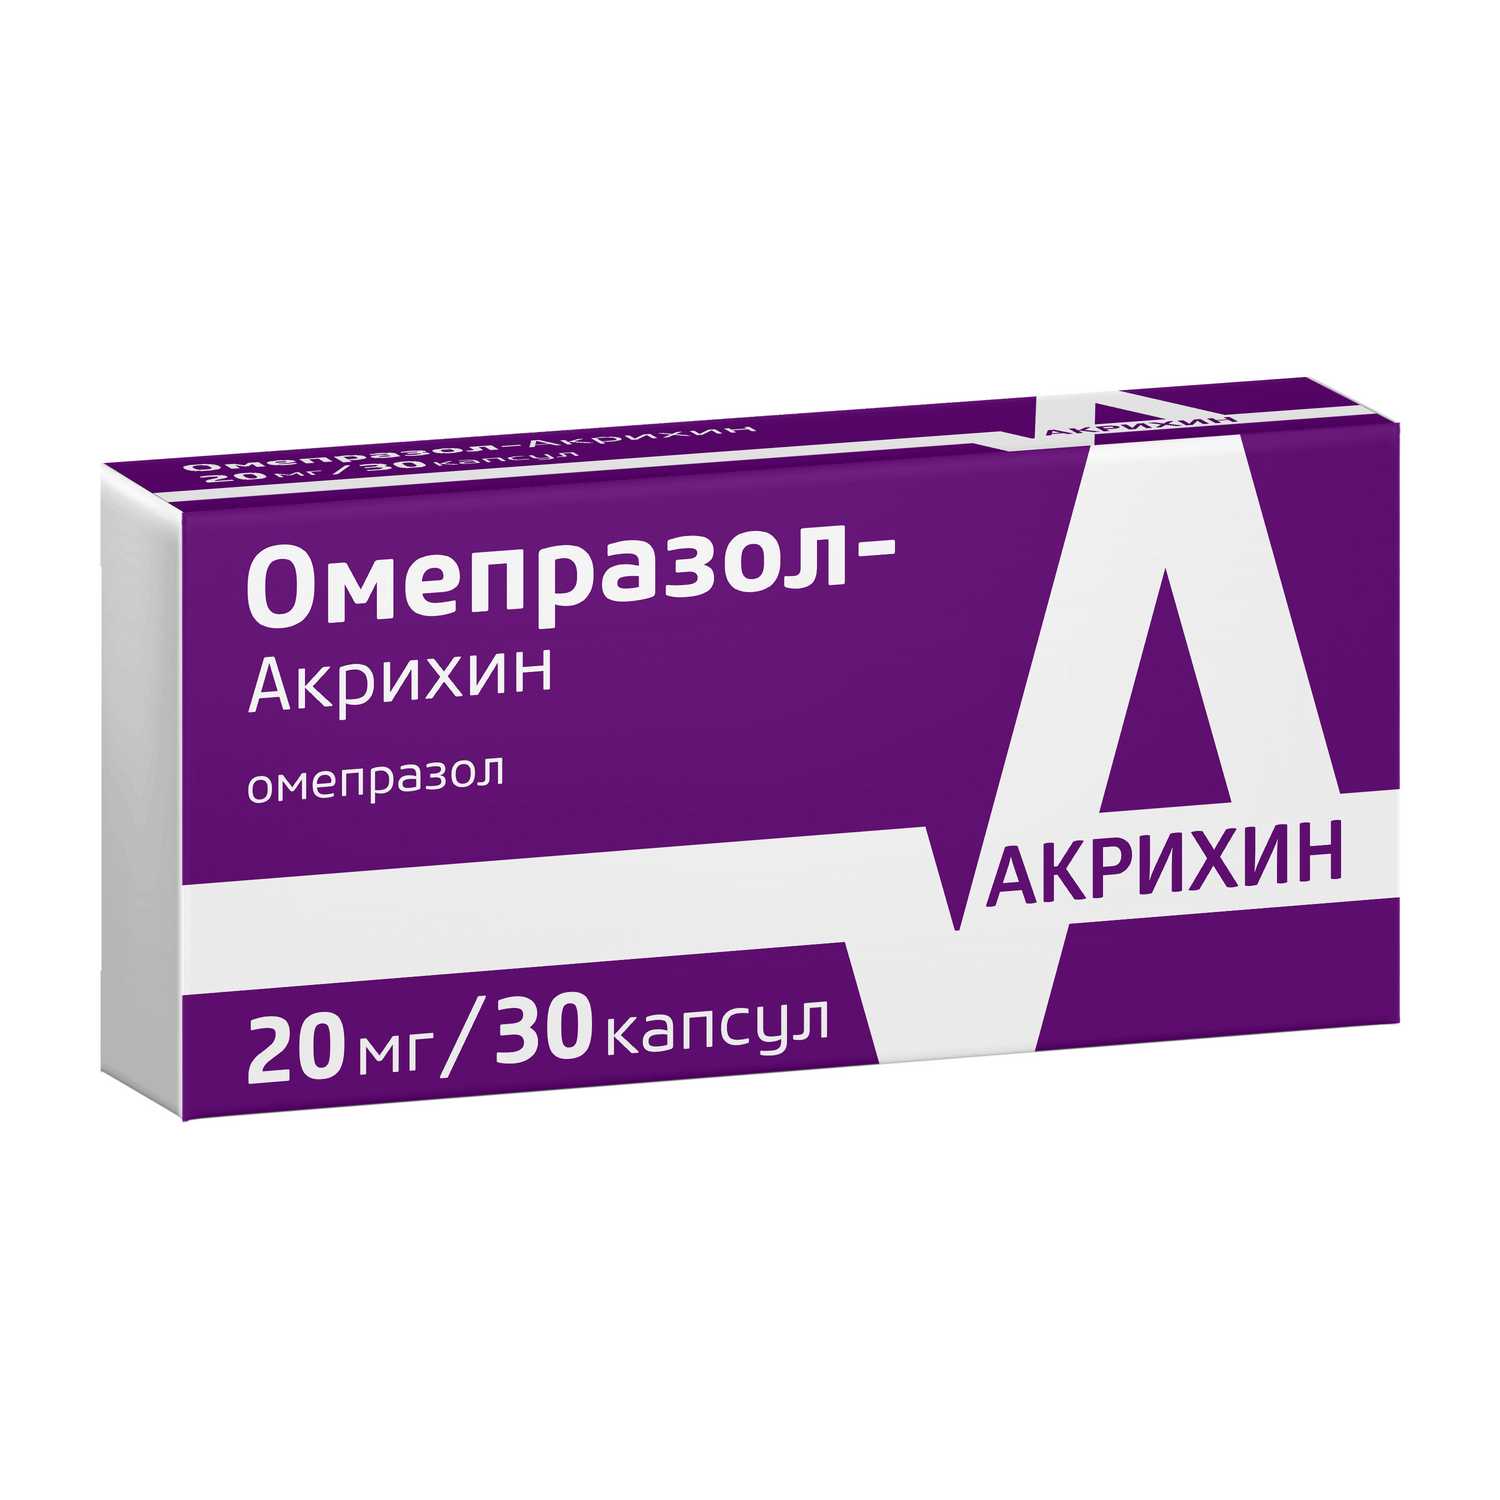 Омепразол при язве. Омепразол 30 капсул. Омепразол-Акрихин 20мг. Омепразол 20 мг 30 Акрихин. Омепразол 20 мг 30 капсул Акрихин.